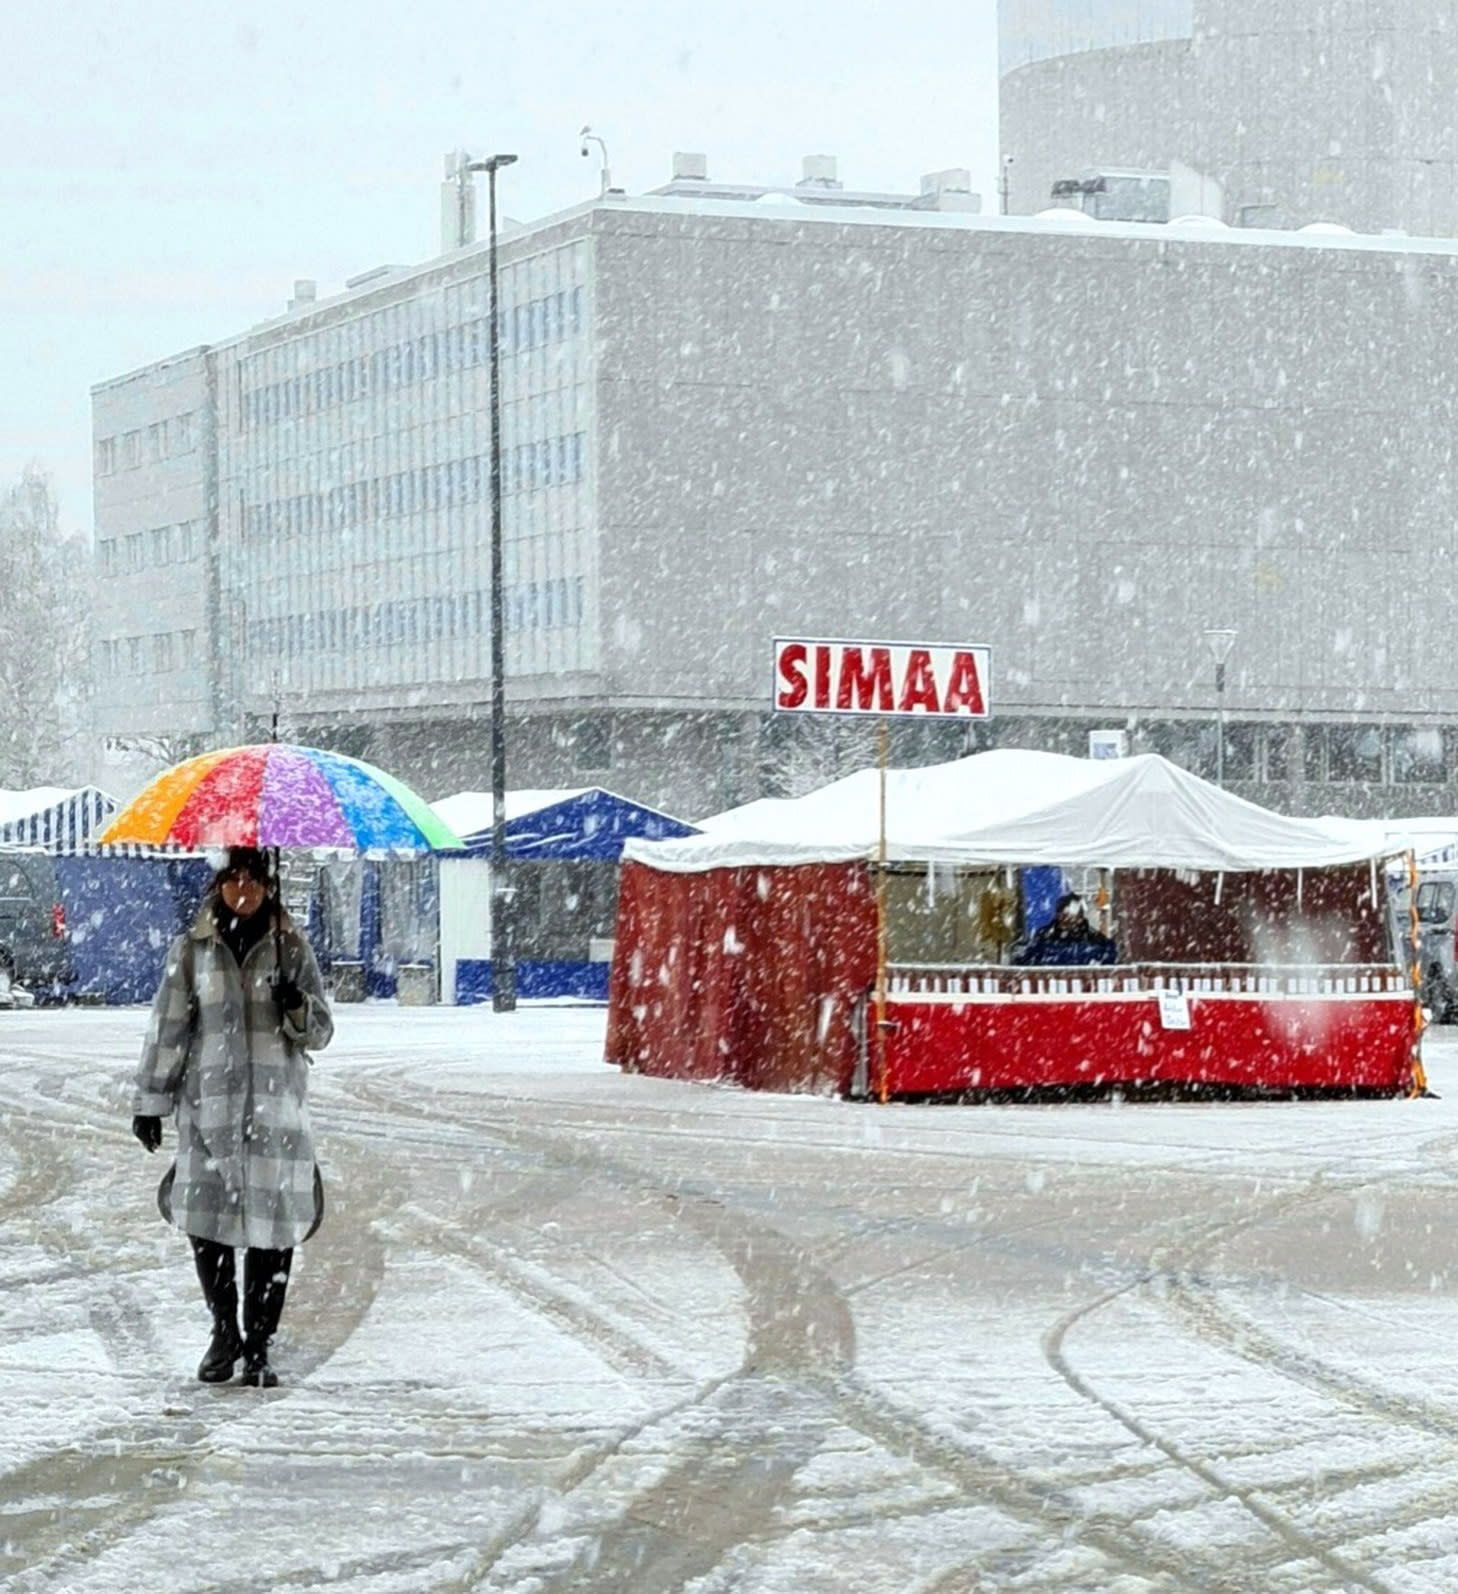 Finland sedang bersiap sedia untuk menyambut Hari Mei secara tradisional, dalam hujan salji dan salji